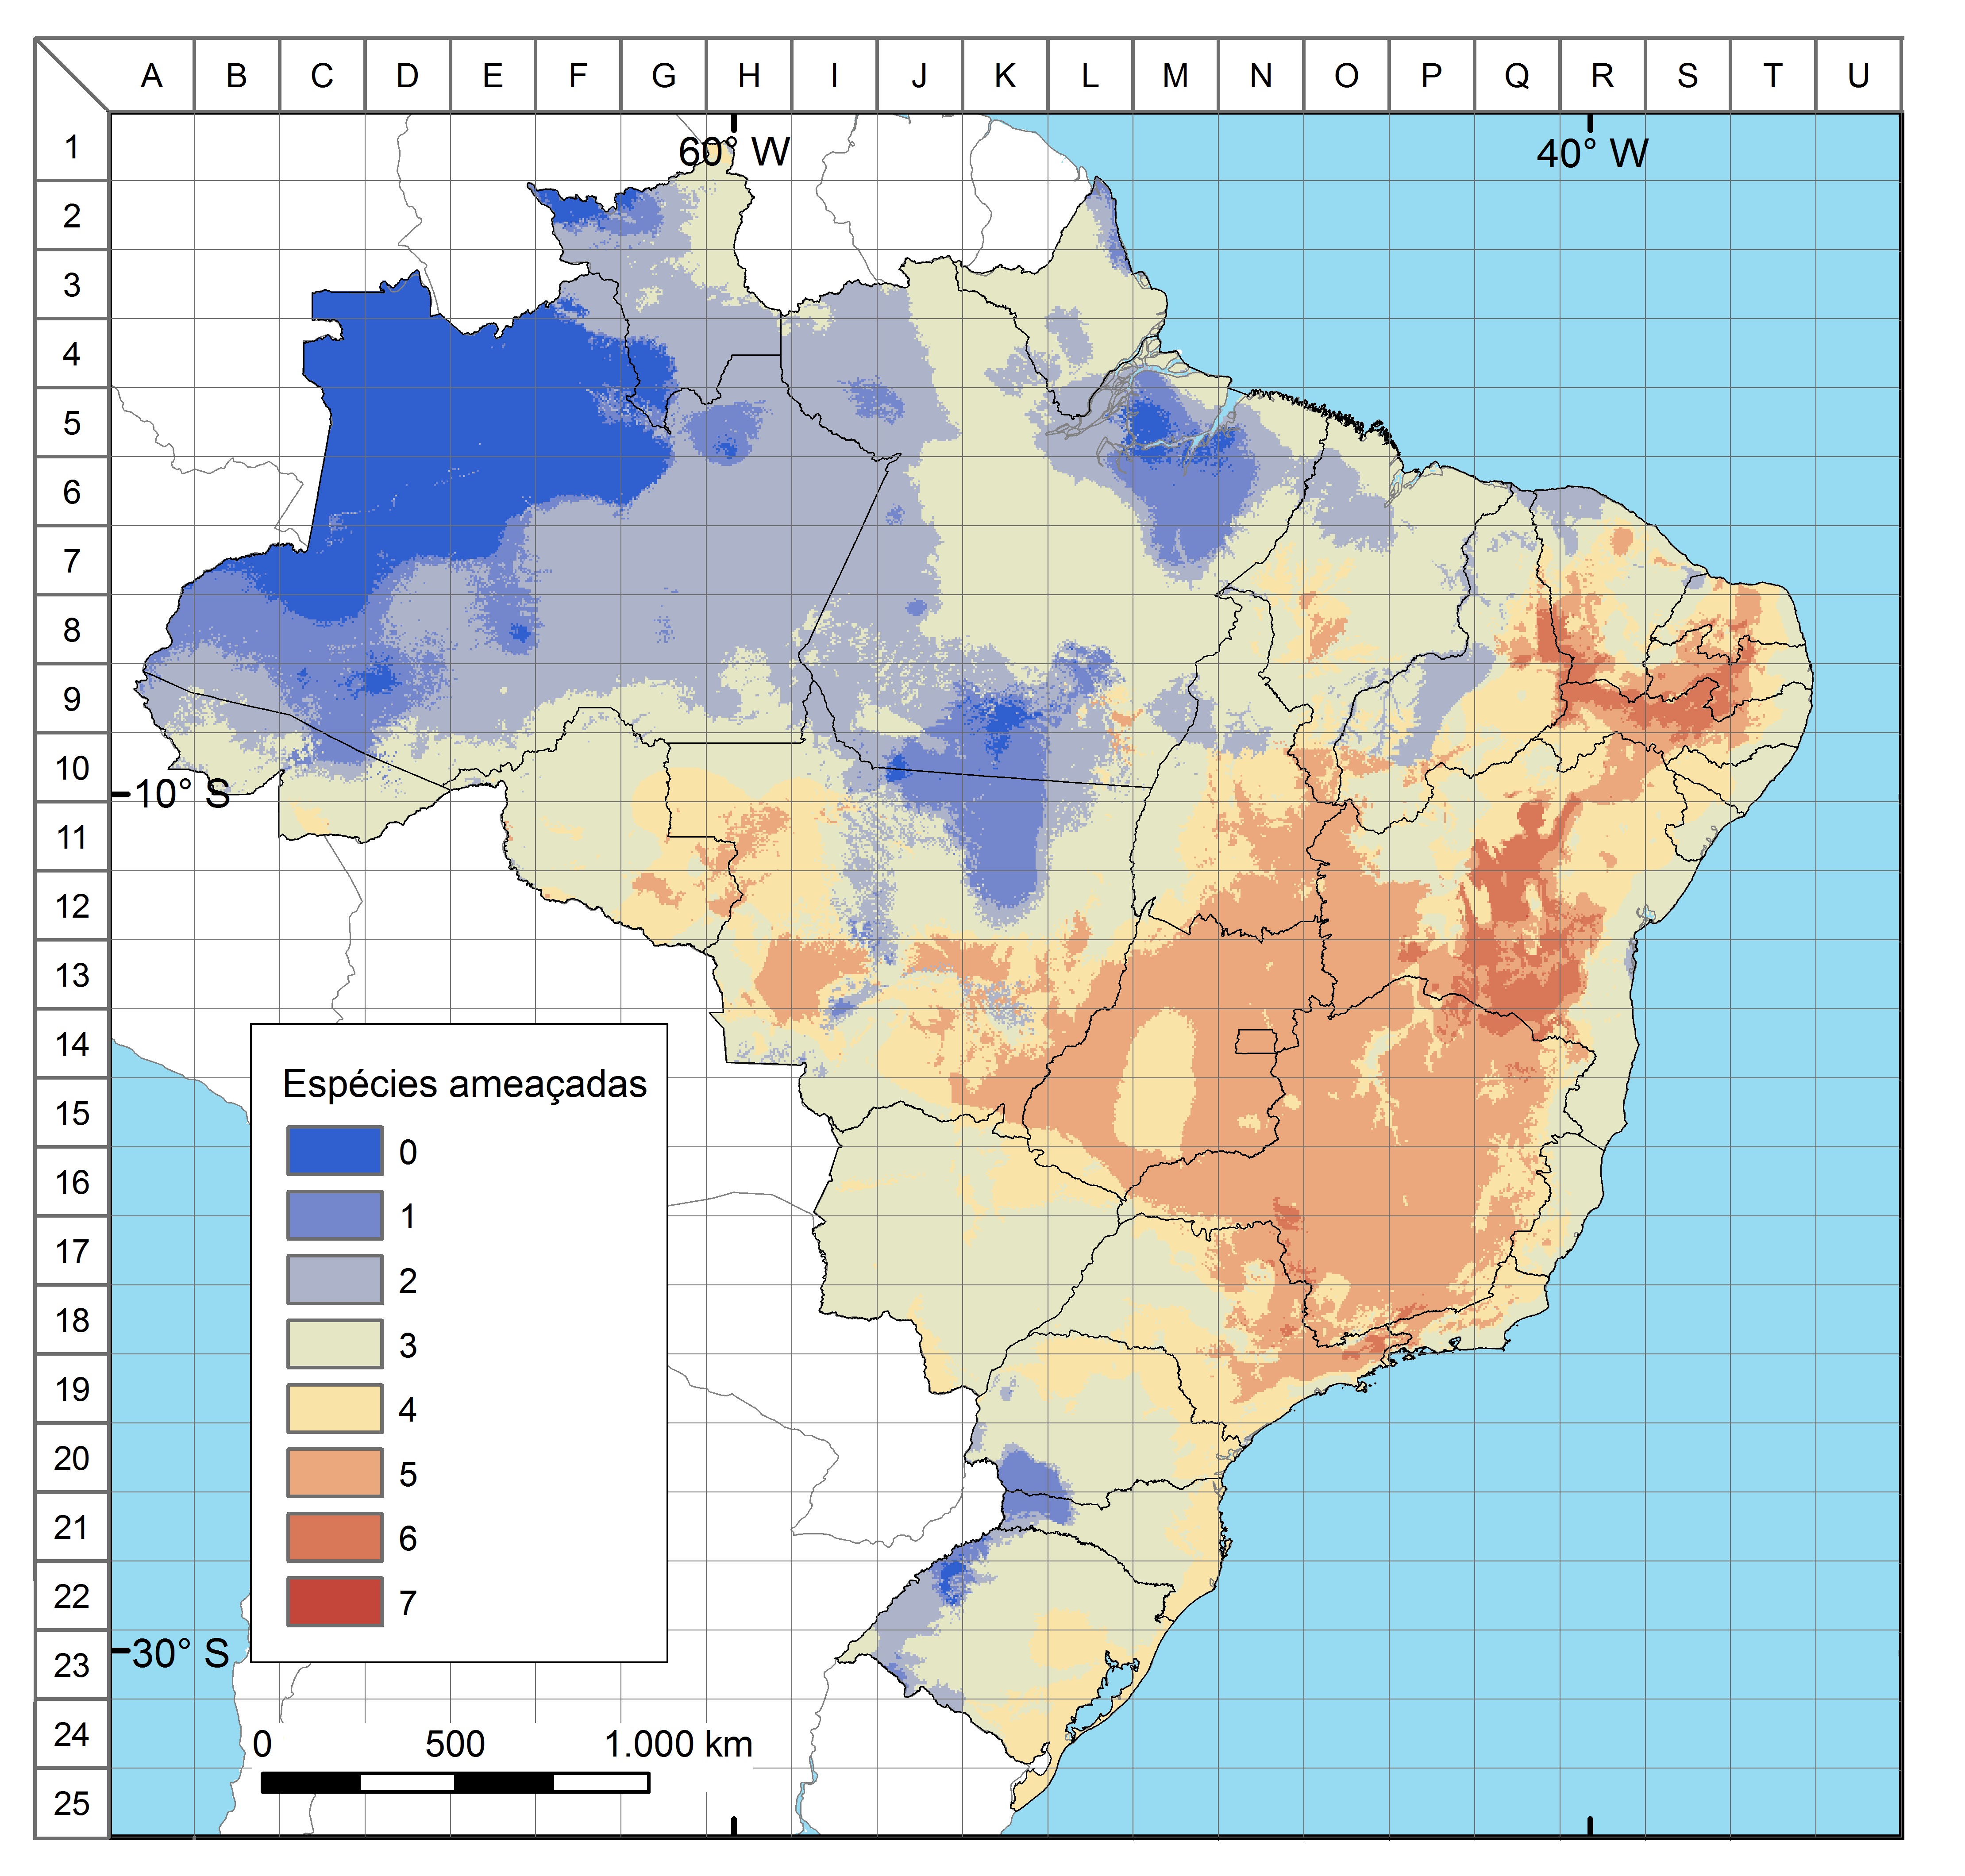 Distribuição potencial de espécies ameaçadas de morcegos no Brasil, considerando as sete espécies oficialmente listadas para o país: Eptesicus taddeii (VU), Furipterus horrens (VU), Glyphonycteris behnii (VU), Lonchorhina aurita (VU), Natalus macrourus (VU), Xeronycteris vieirai (VU) e Lonchophylla dekeyseri (EN).